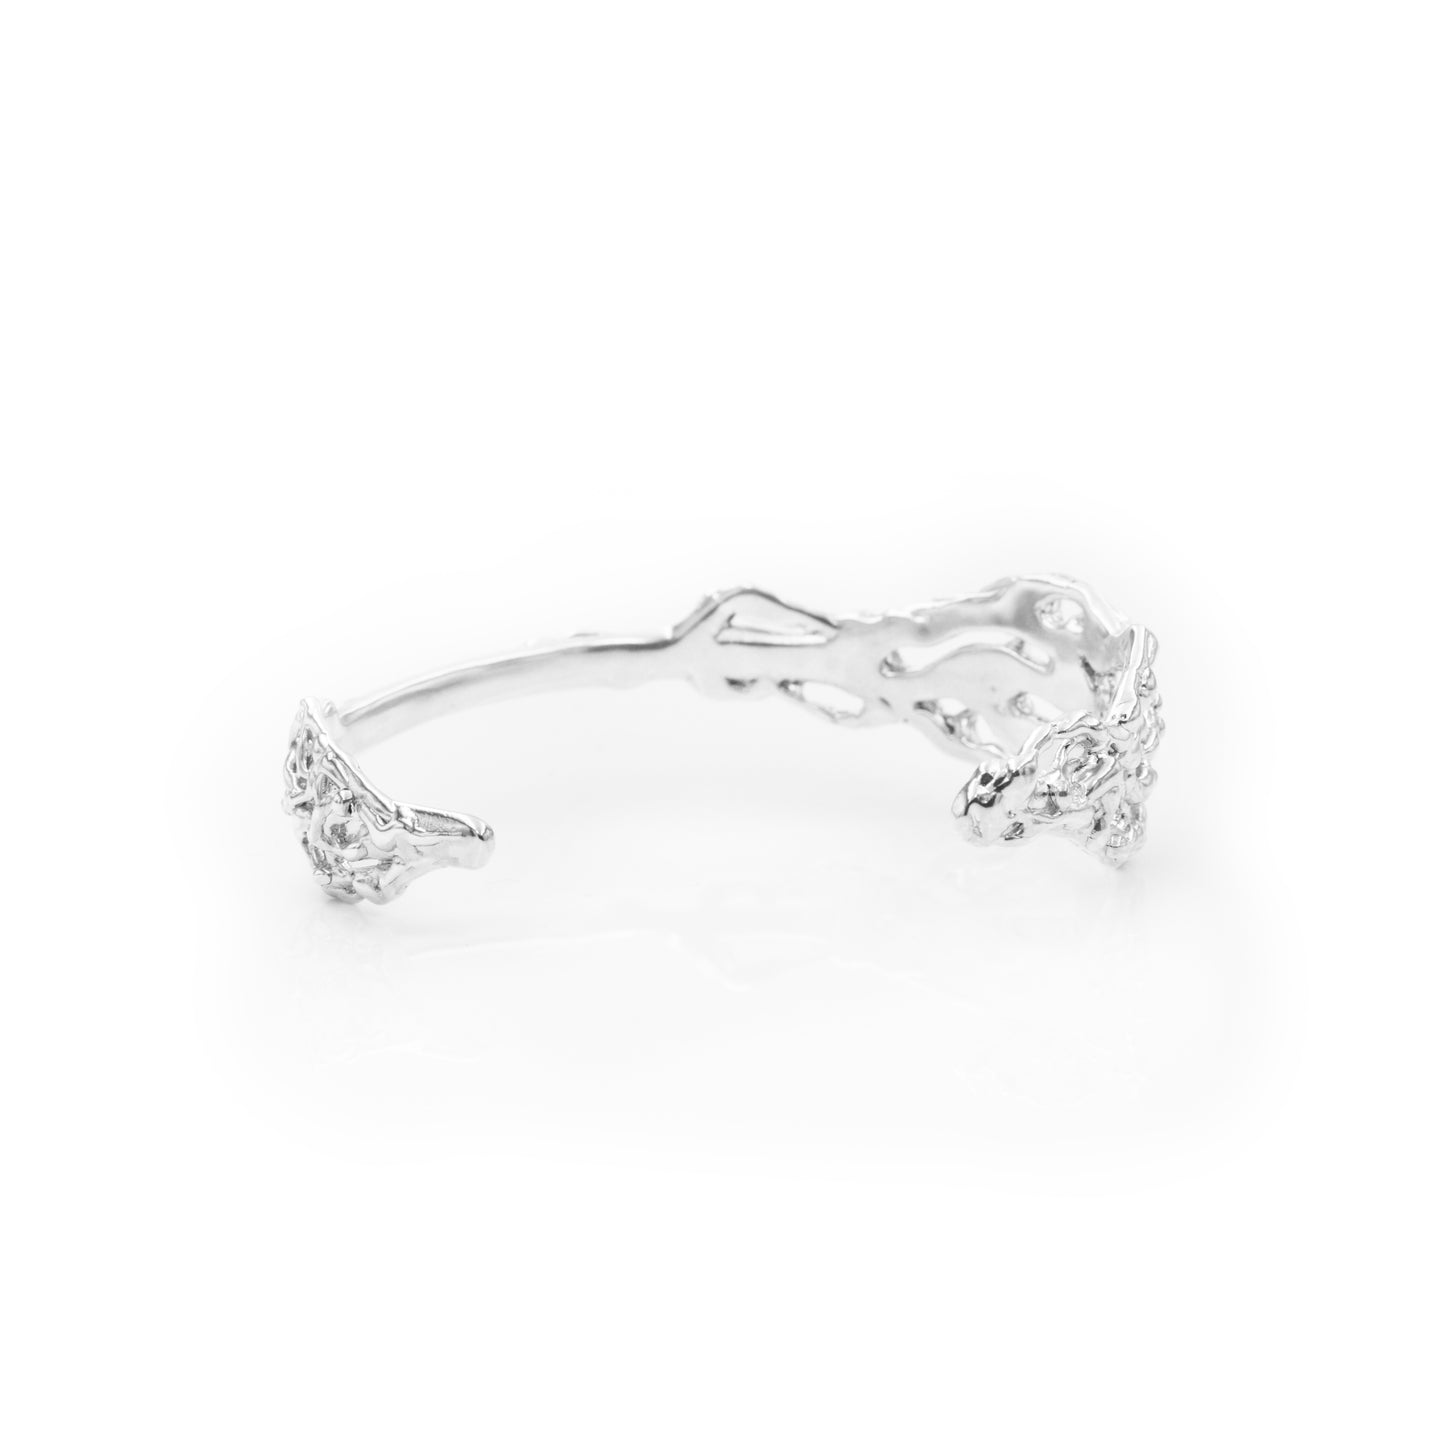 
                  
                    Aphrodite Cuff Bracelet - Spiritual Cuff Bracelet - Designer Jewelry - Statement Cuff Bracelet - Sterling Silver Cuff Bracelet - Free Form
                  
                